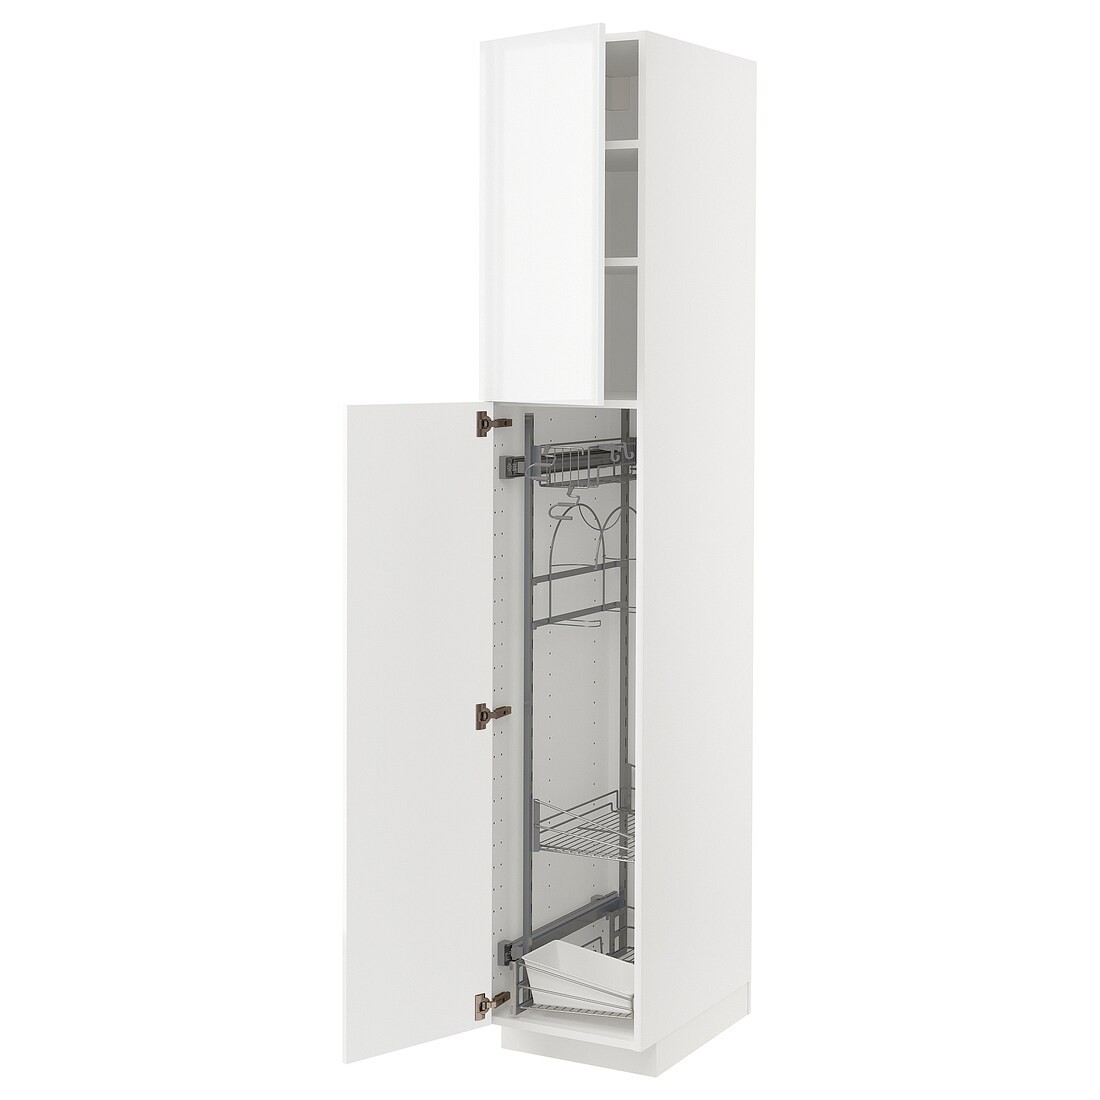 METOD МЕТОД Высокий шкаф с отделением для аксессуаров для уборки, белый / Ringhult светло-серый, 40x60x220 см